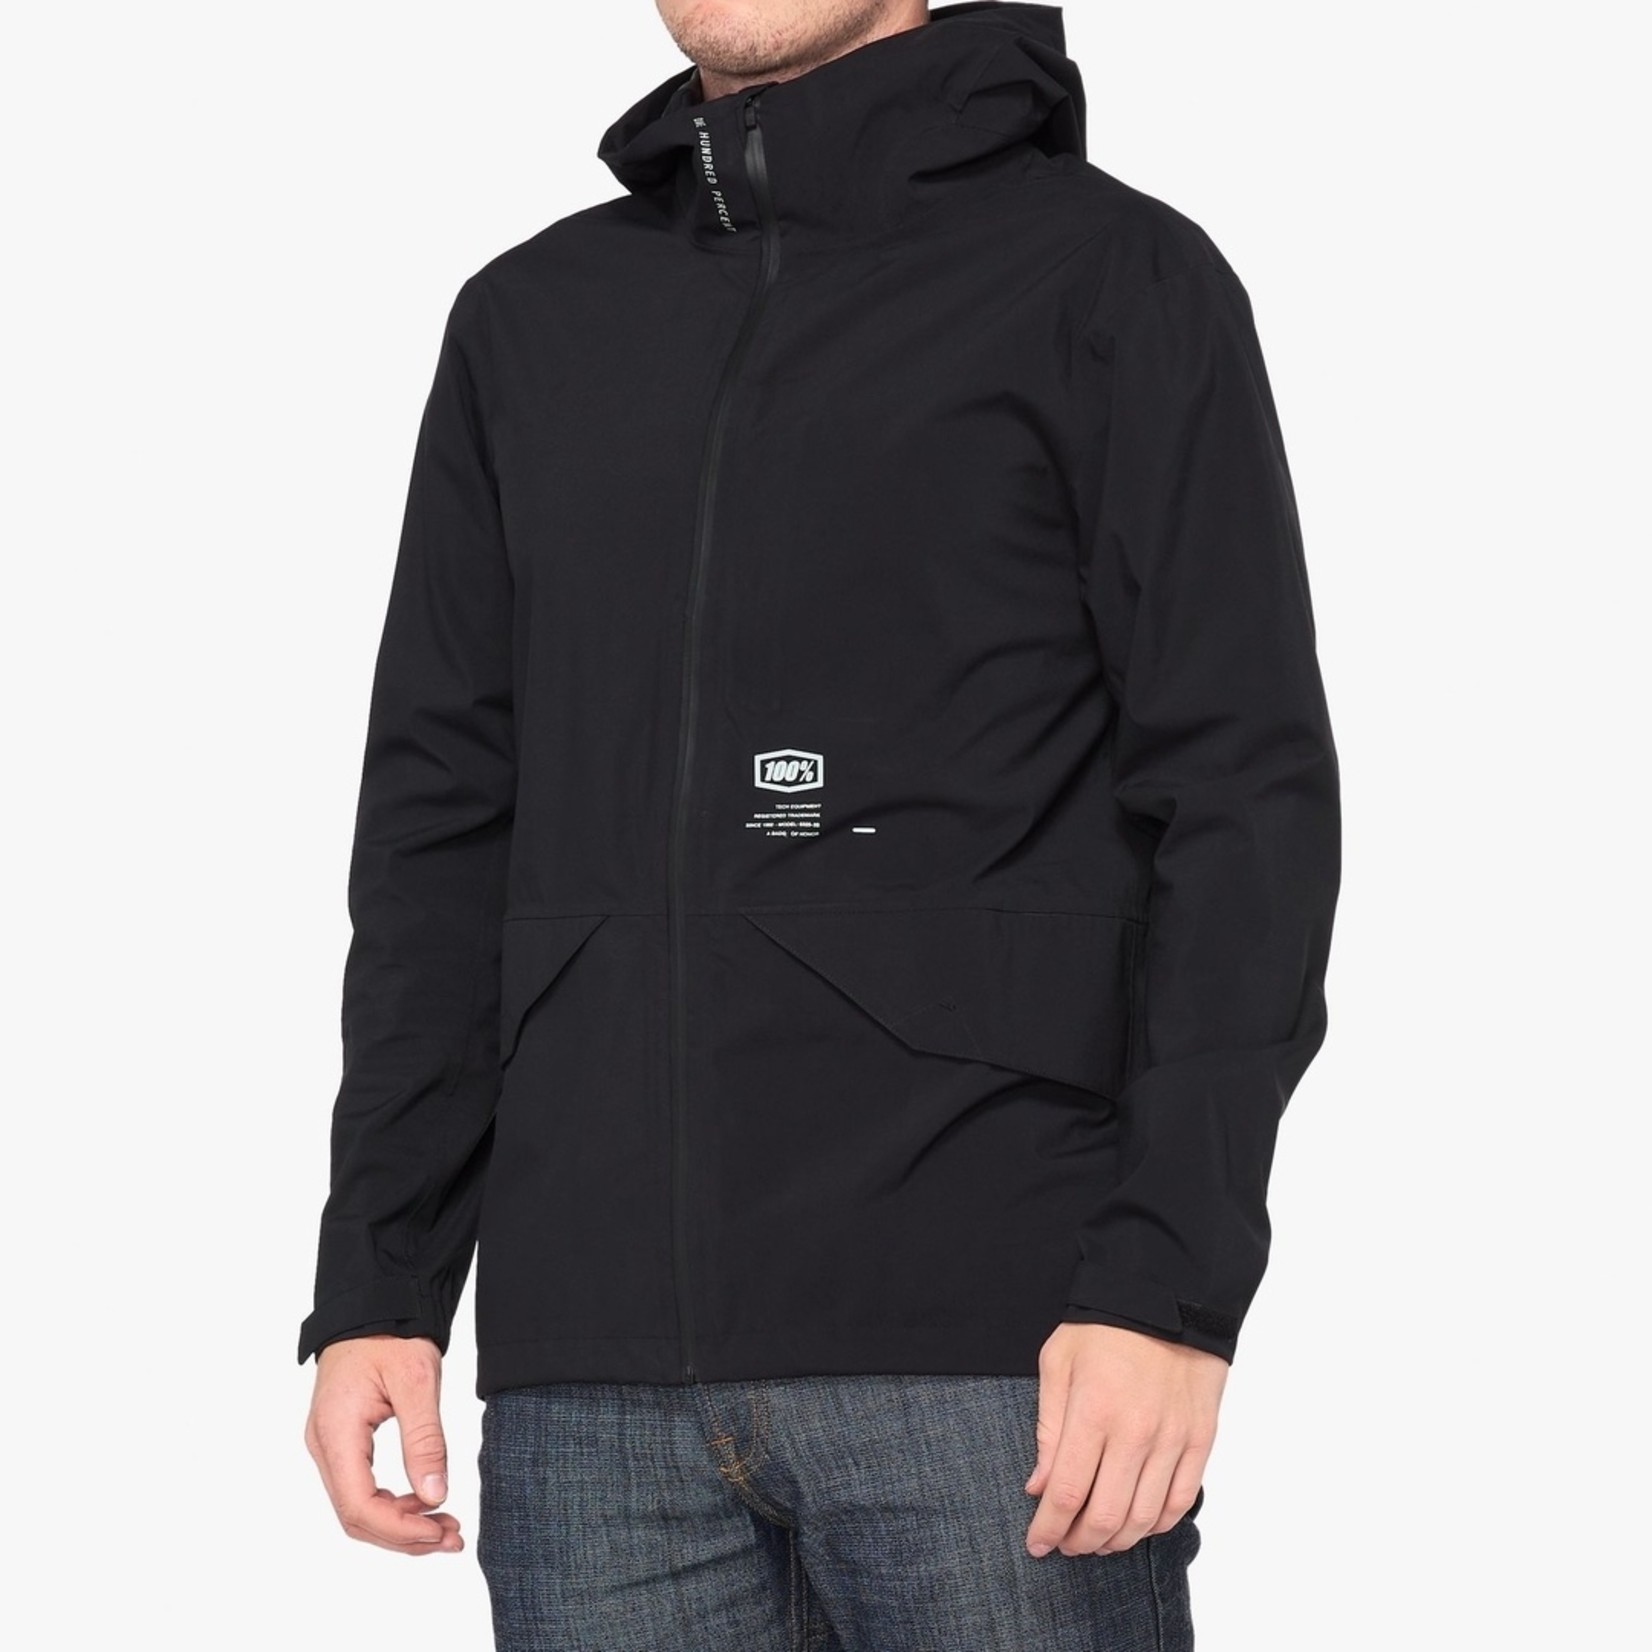 1 100% Hydromatic Waterproof Parka Jacket - Black